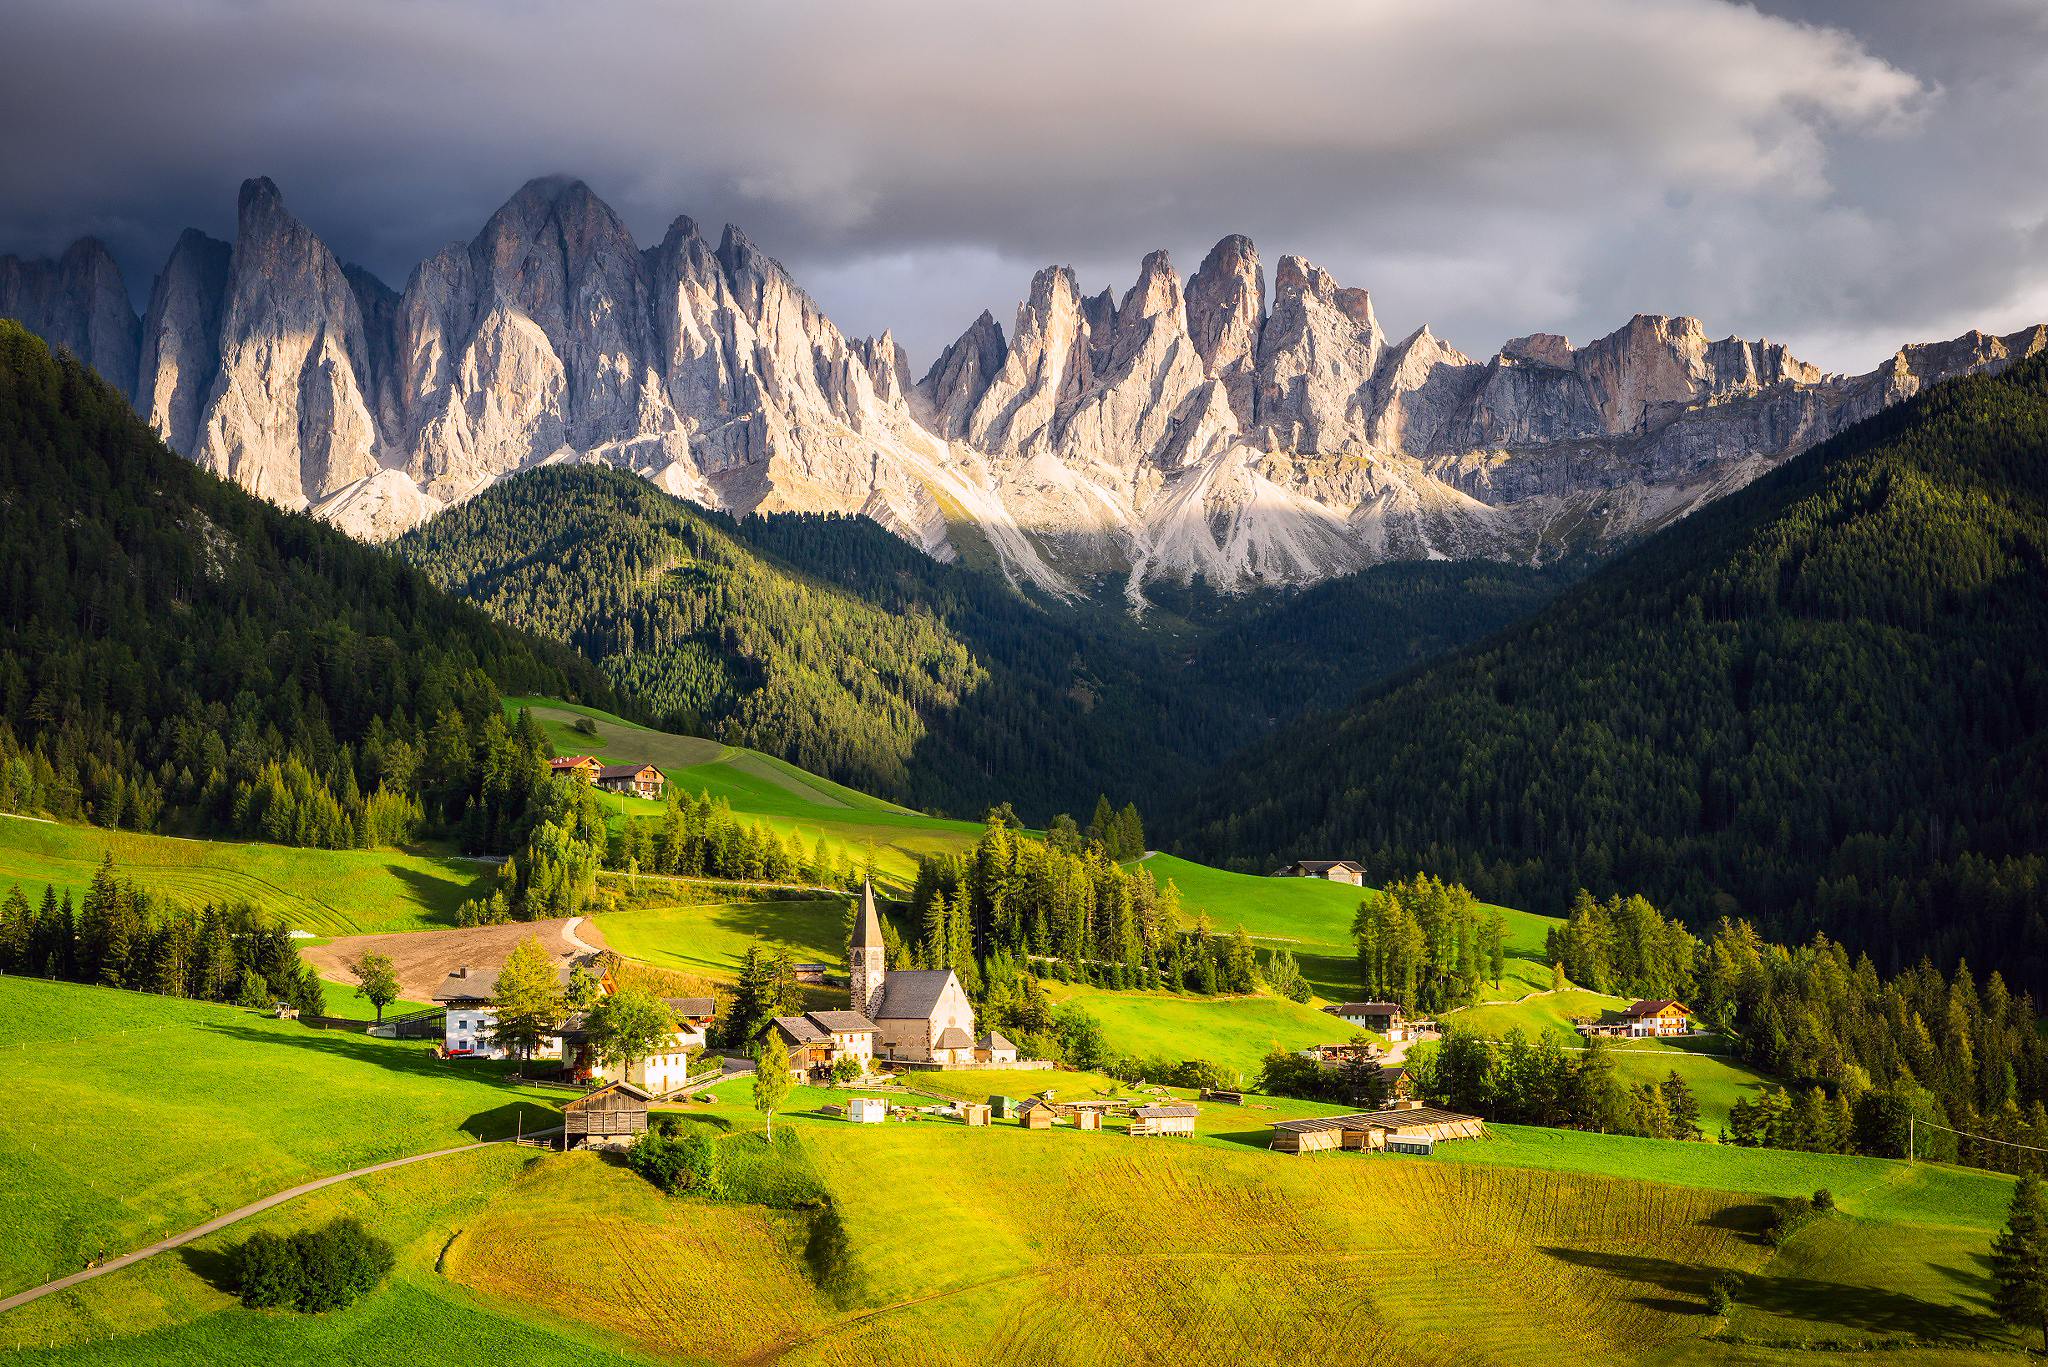 Để tìm được không gian yên tĩnh, tràn đầy năng lượng chữa lành và thư giãn tận hưởng, tải ngay hình nền miễn phí của những ngôi làng trên núi tại Italia. Hầu hết các bức ảnh đều được chụp từ góc nhìn khác nhau, đưa bạn đến với những chuyến phiêu lưu mới và thú vị.